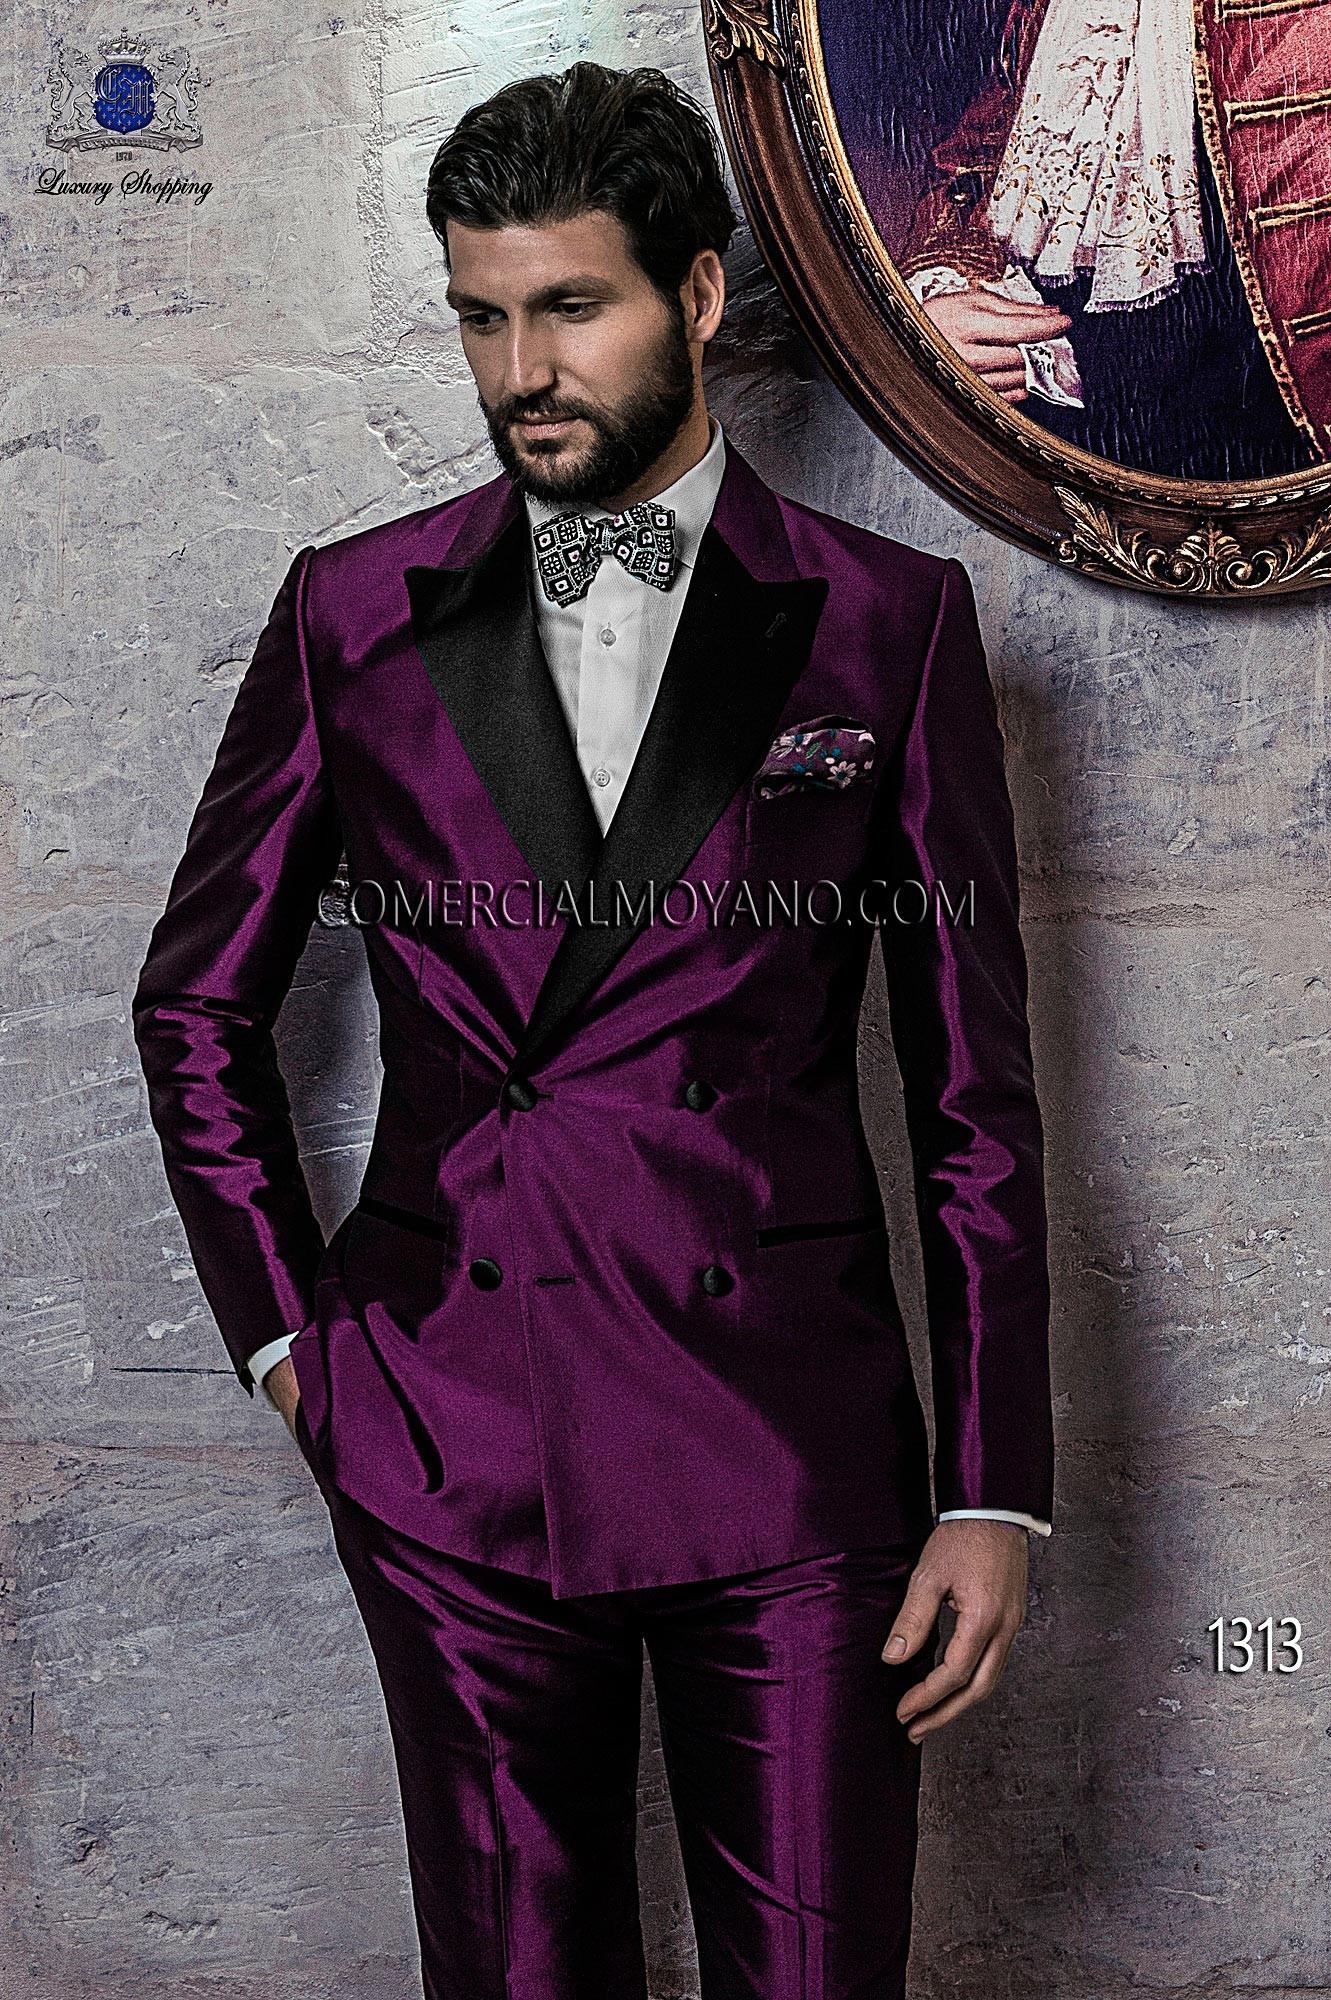 Italian bespoke suit, purple wedding tuxedo style 1313 Ottavio Nuccio Gala.